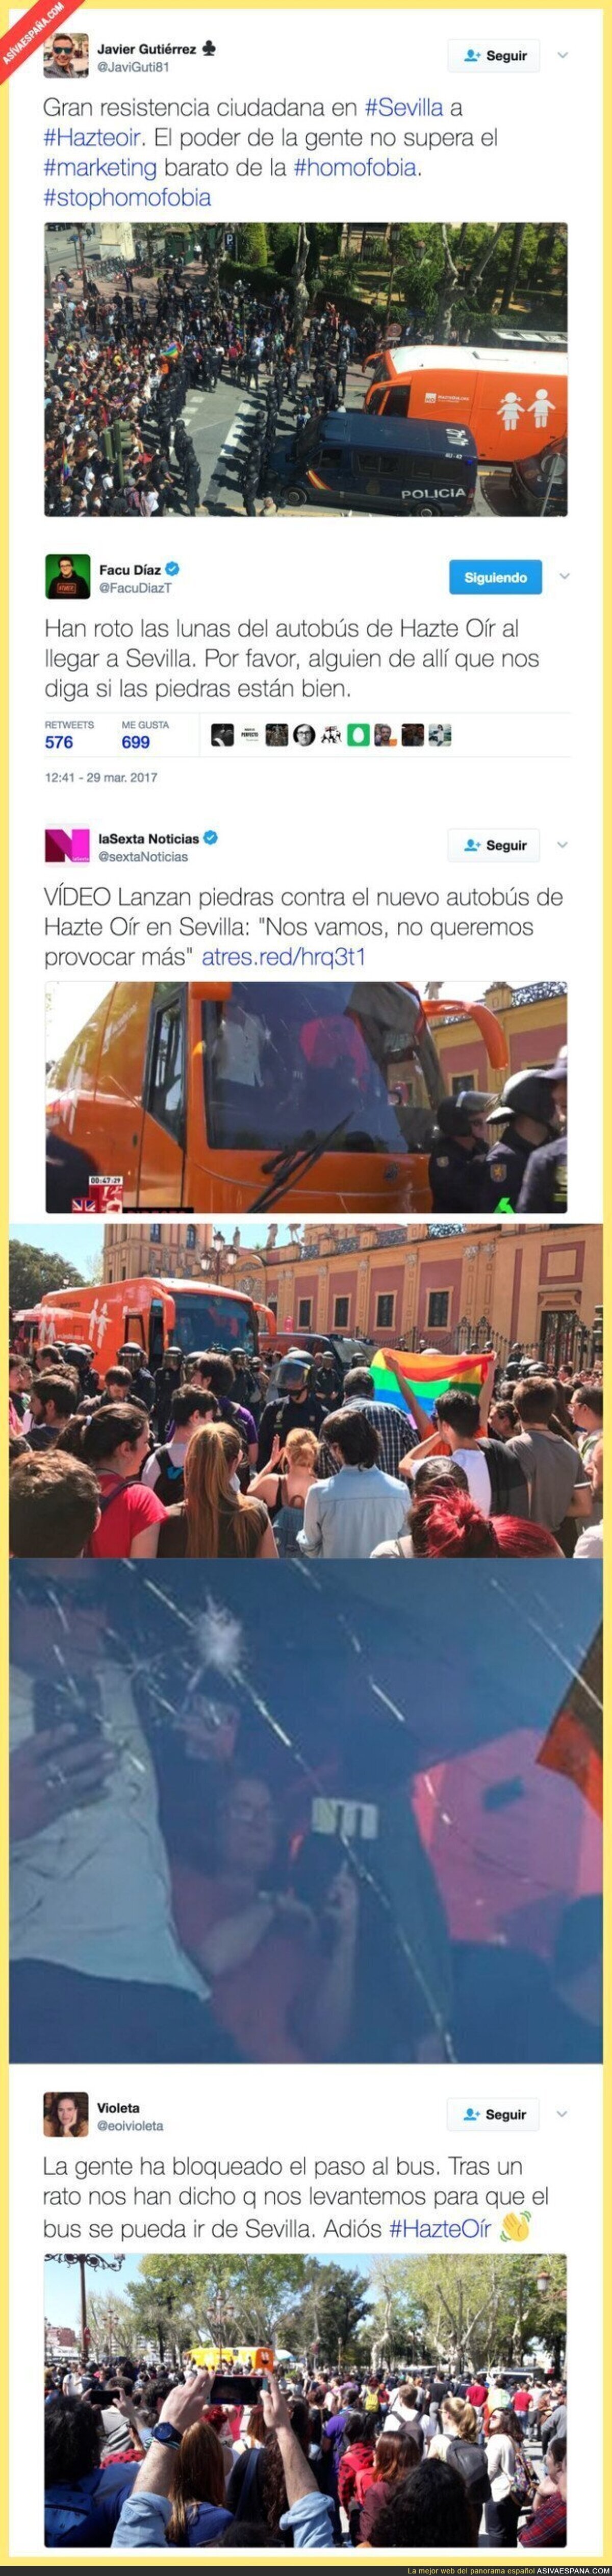 ÚLTIMA HORA: Han recibido a pedradas al autobús de 'HazteOír' en Sevilla